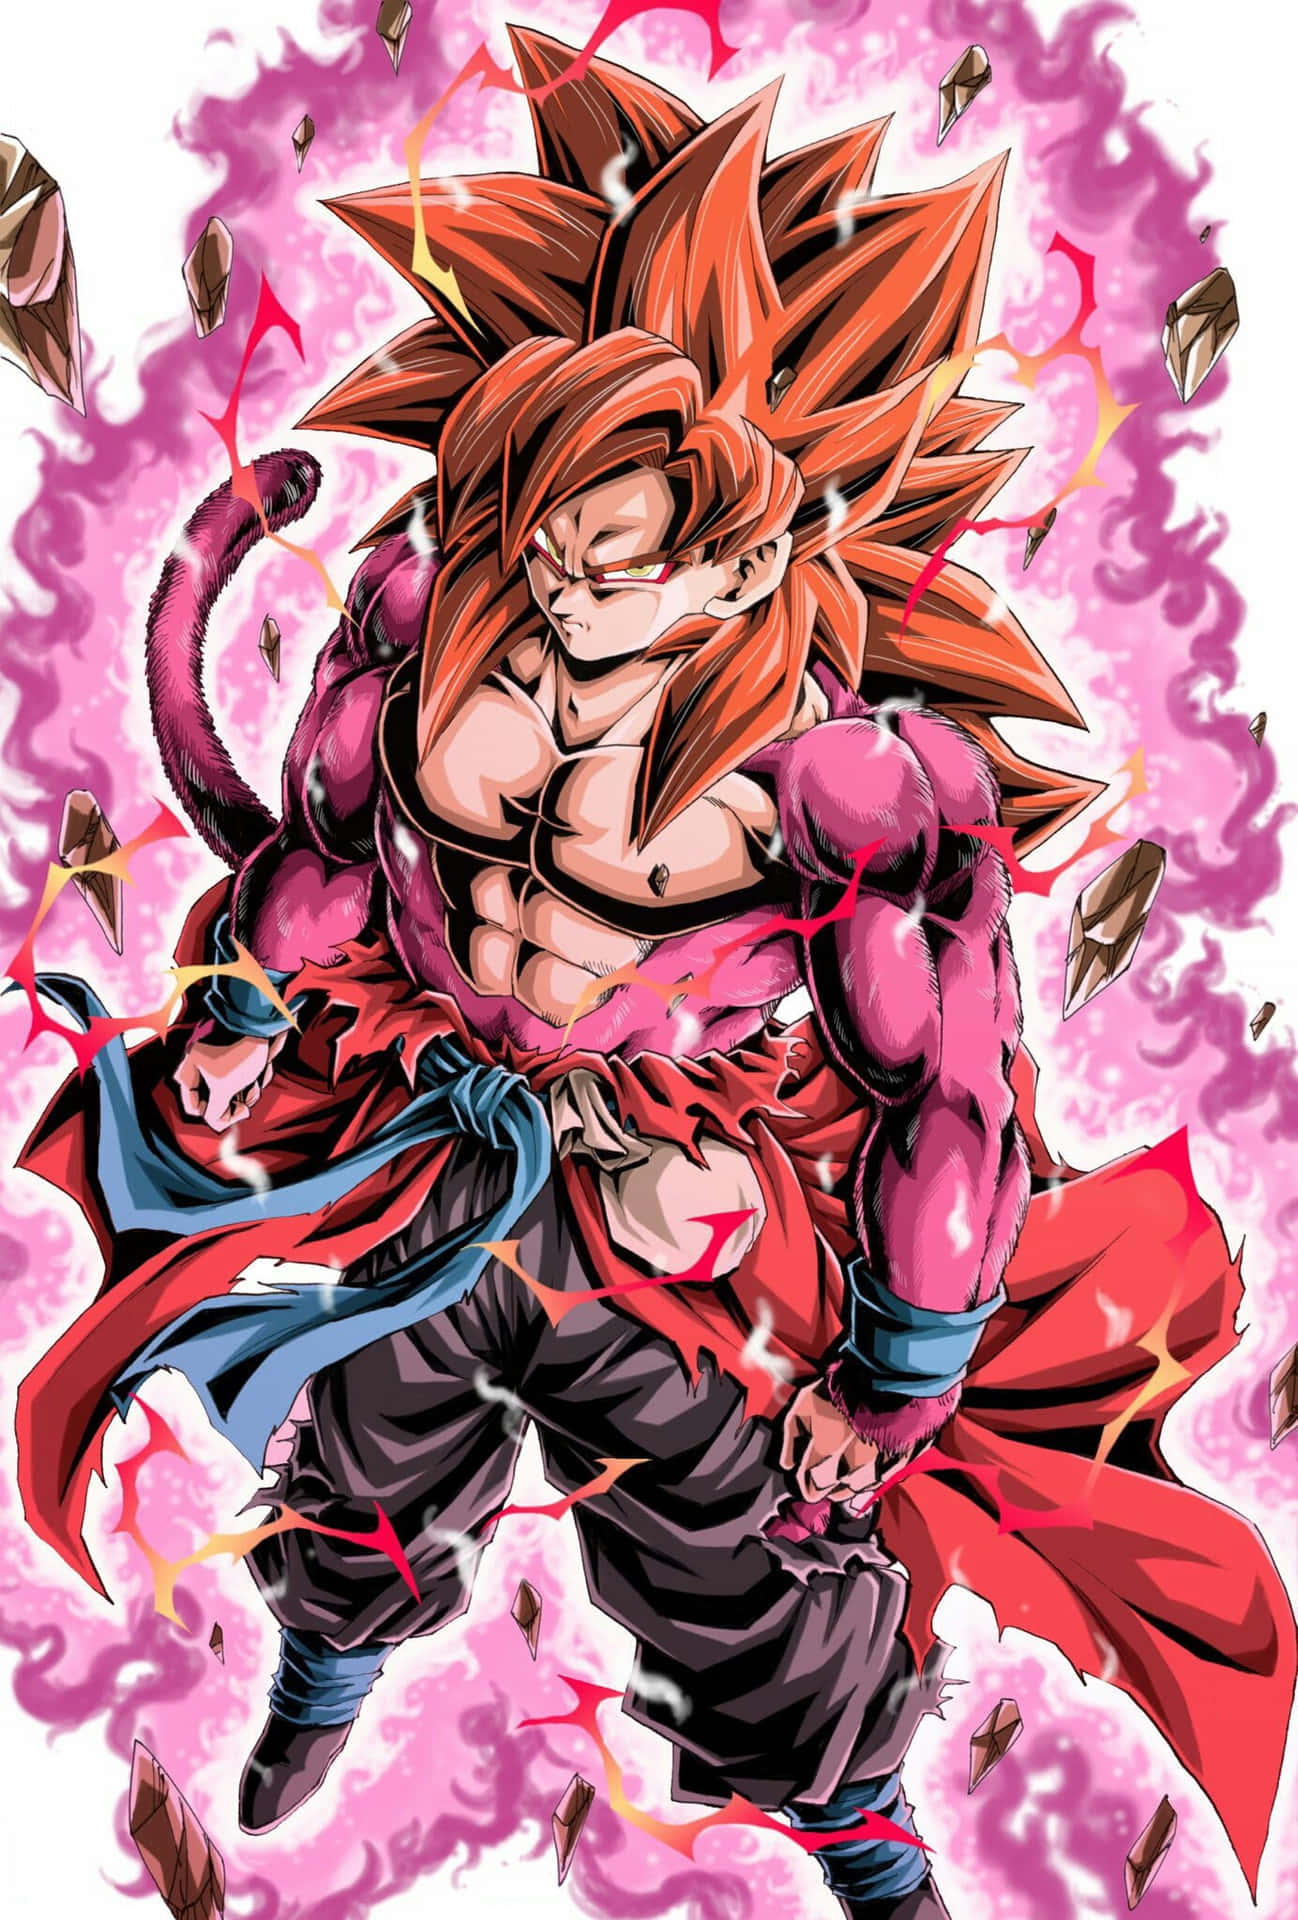 Goku SSJ4 radiates with power Wallpaper